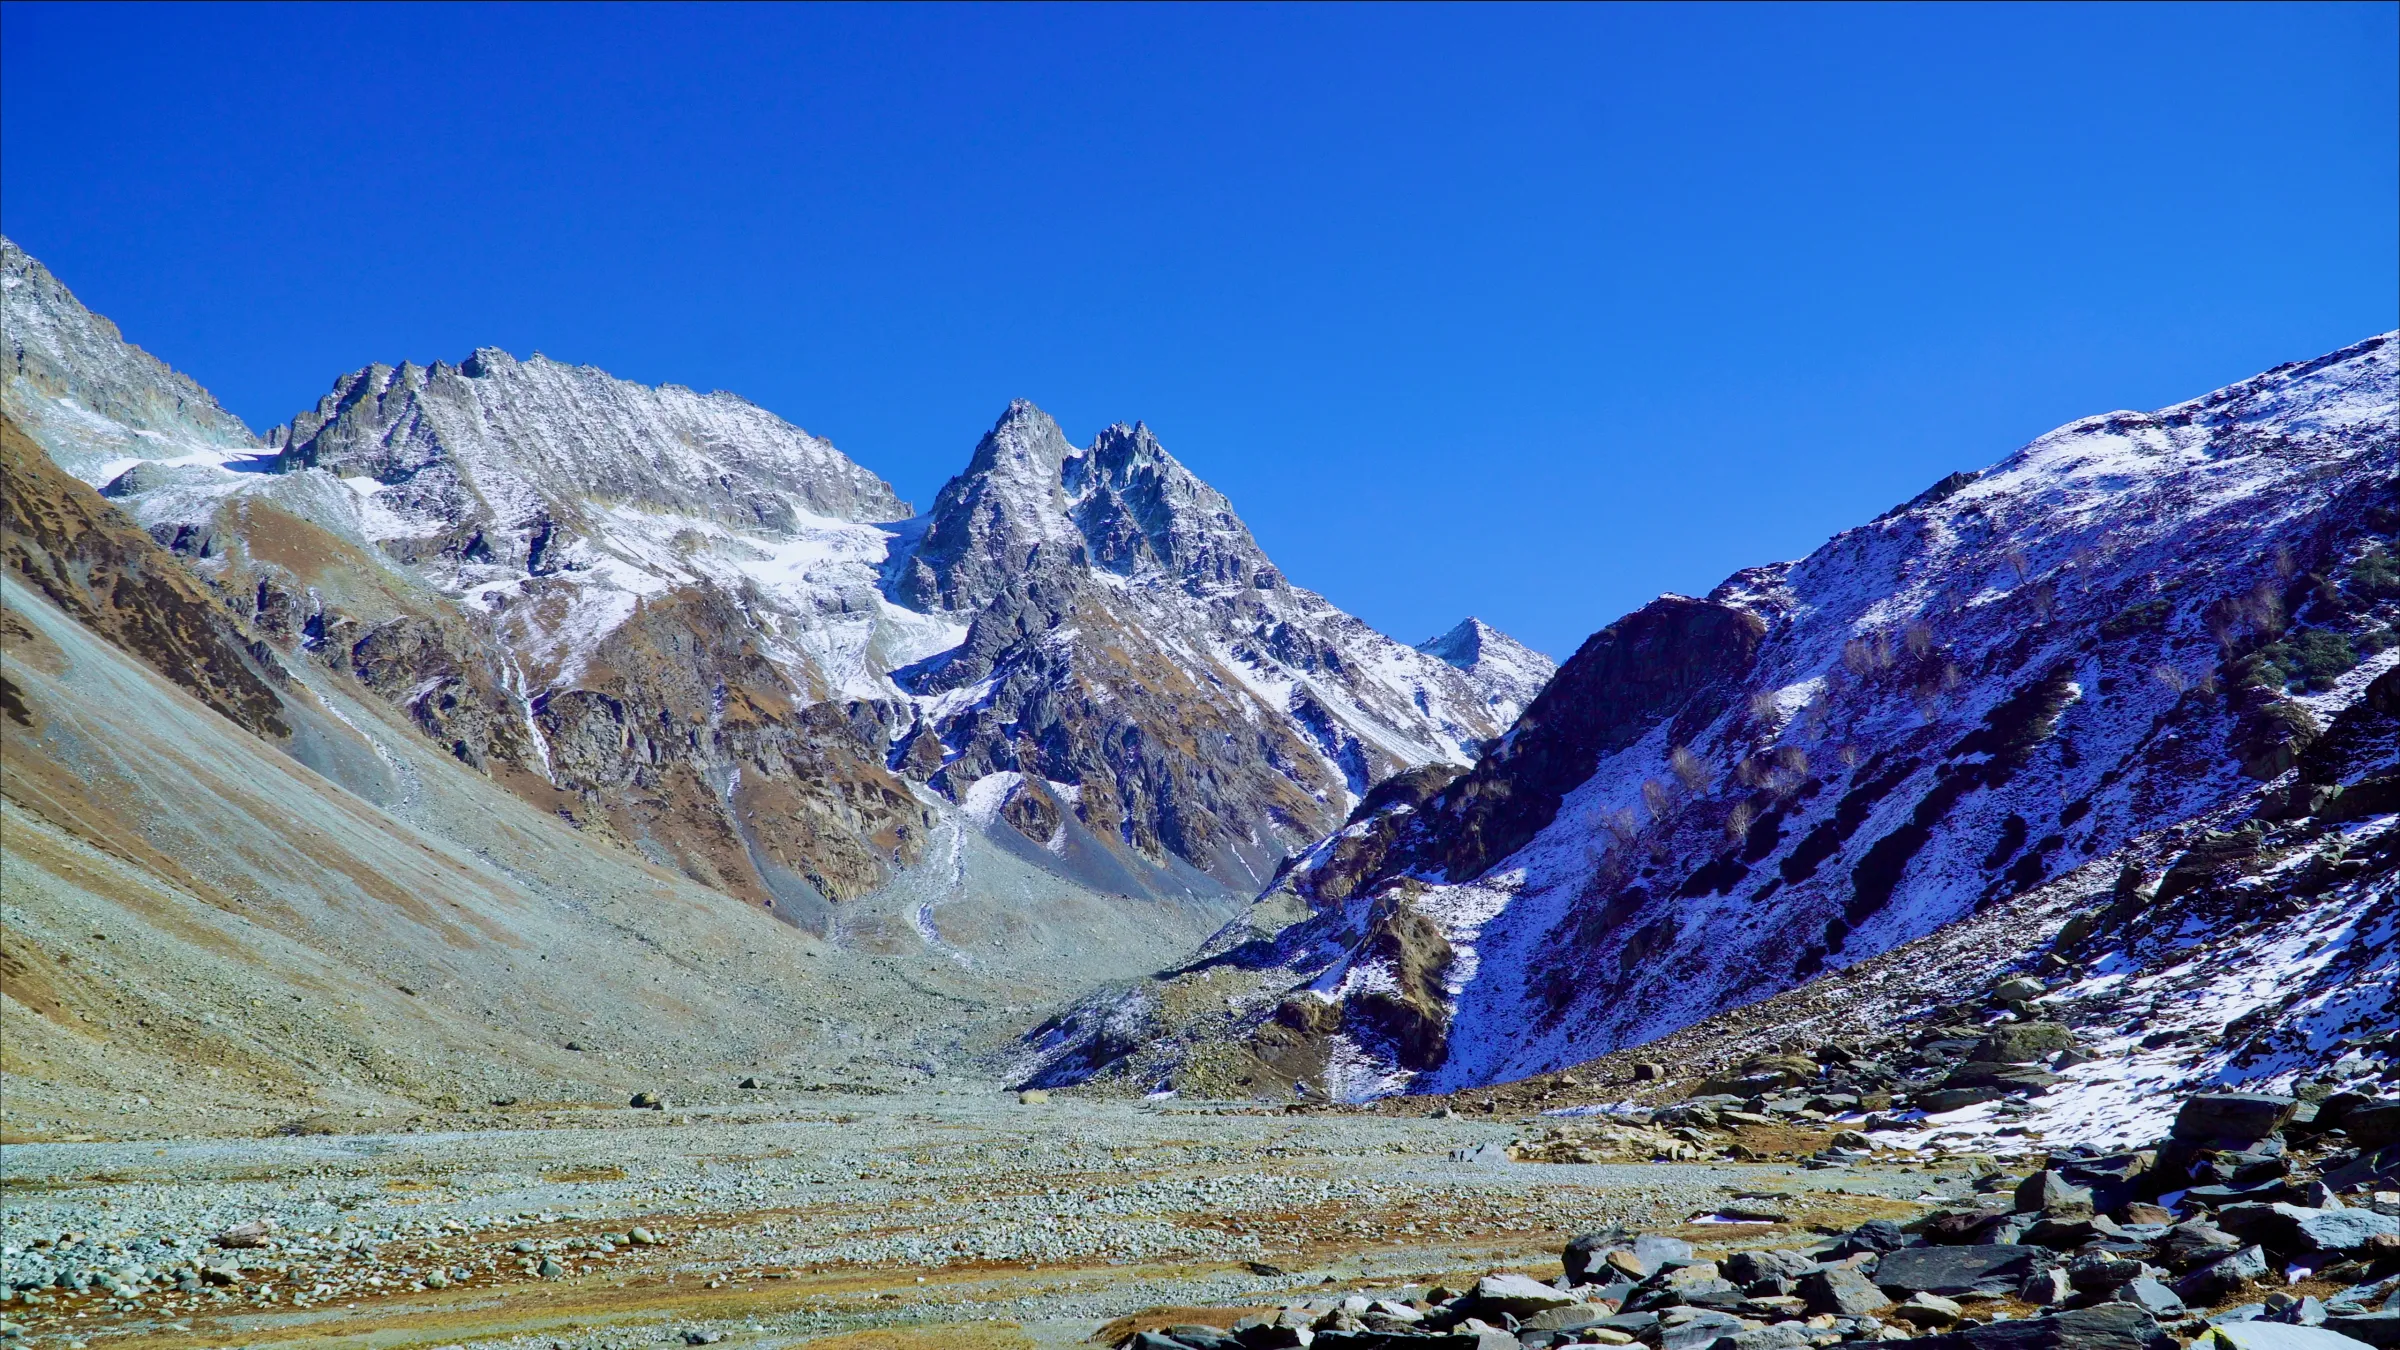 One part of the Kolahoi glacier, the biggest glacier in Indian Kashmir, October 17, 2022